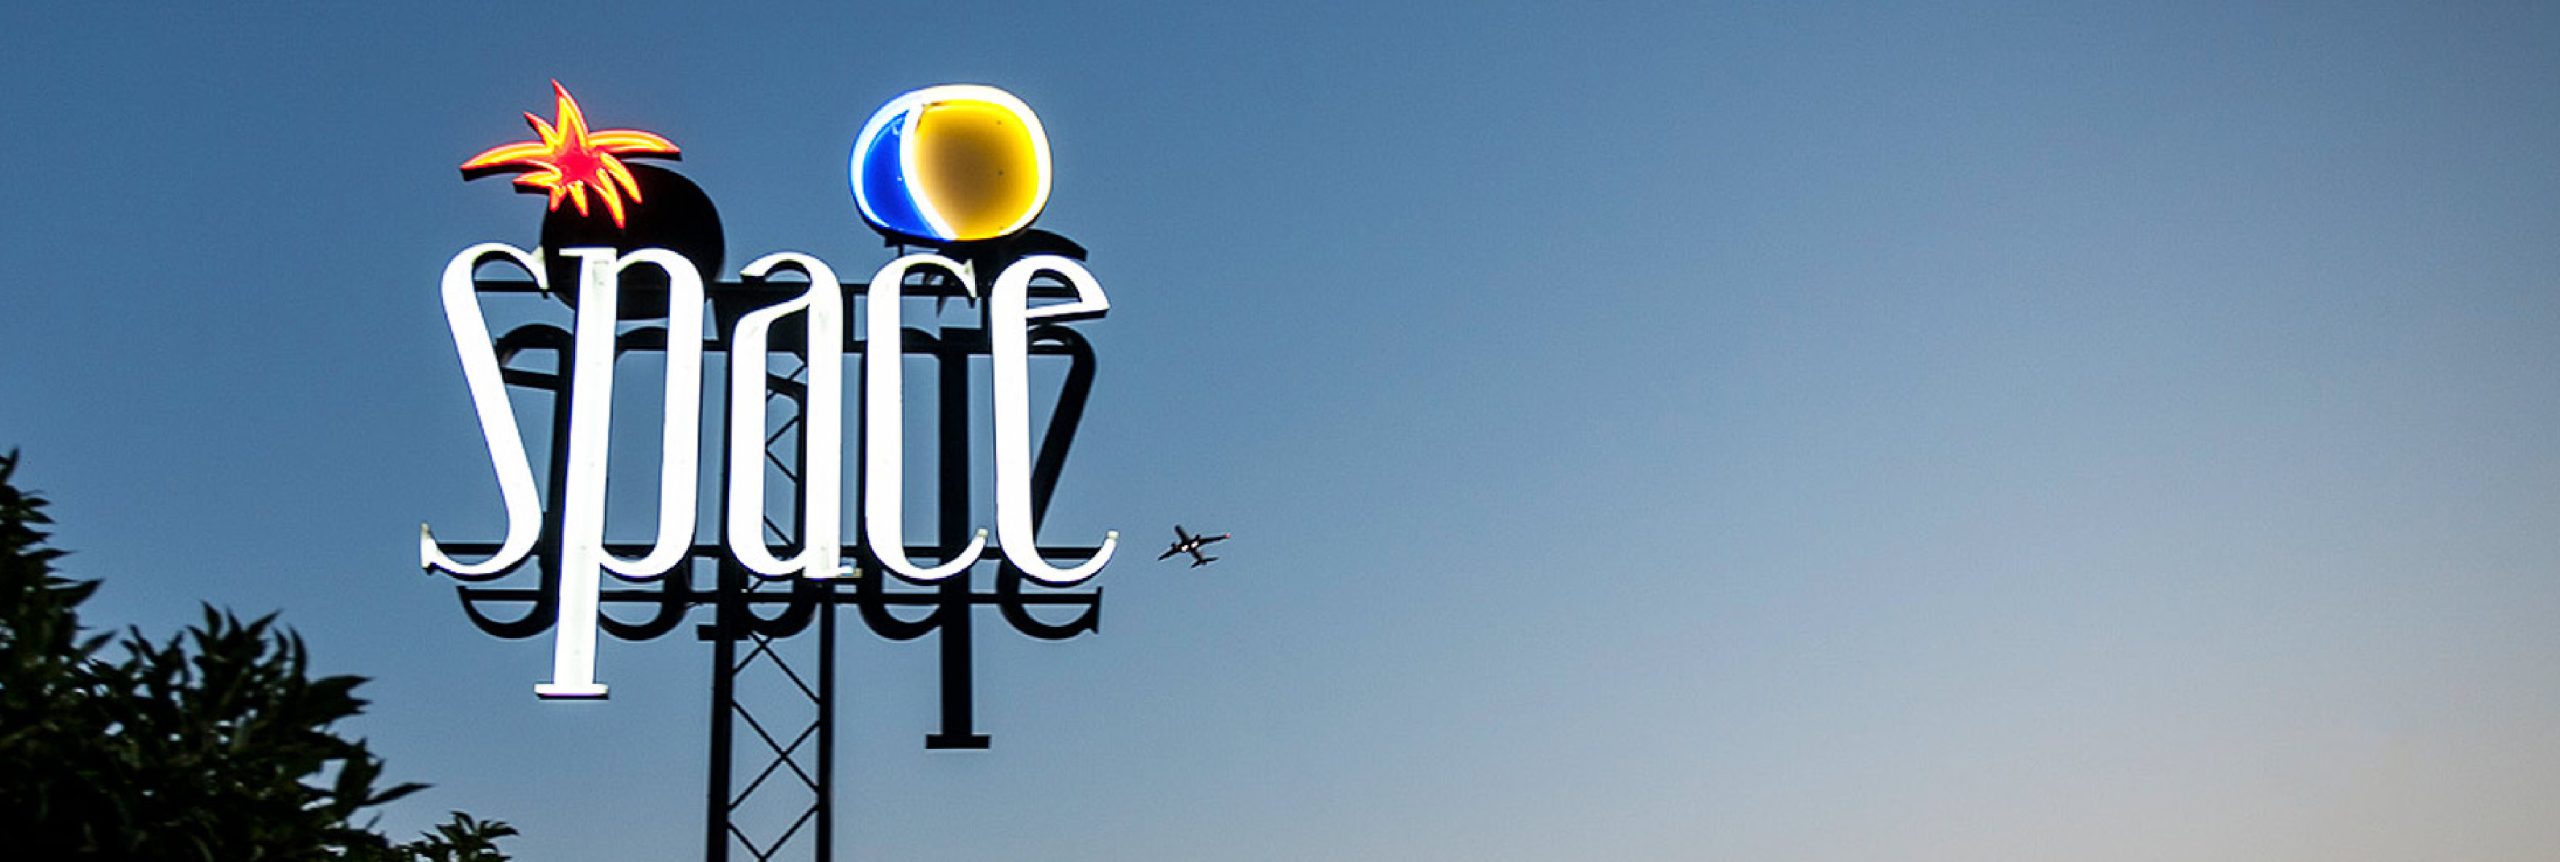 Space Ibiza to open new club in Riccione,  Italy